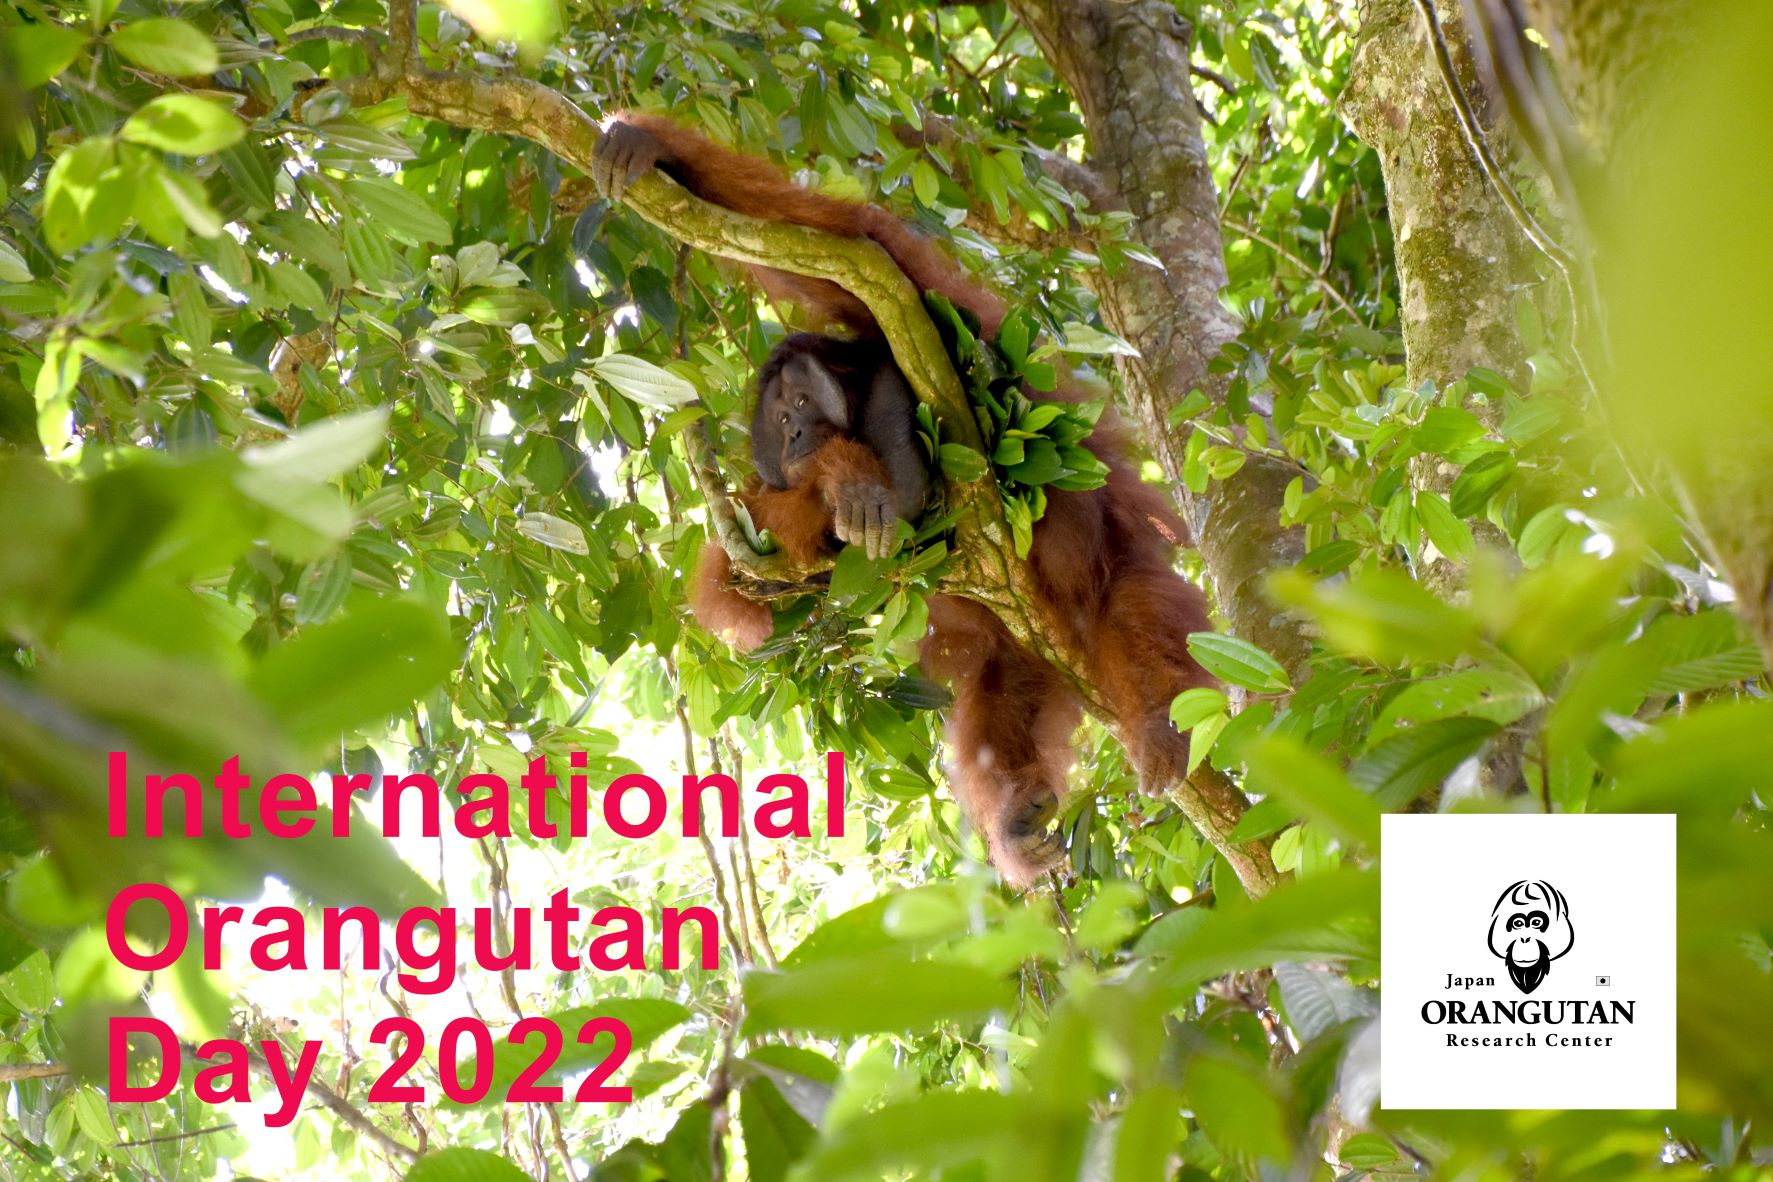 International Orangutan Day 　　　　　　　　　　国際オランウータンの日